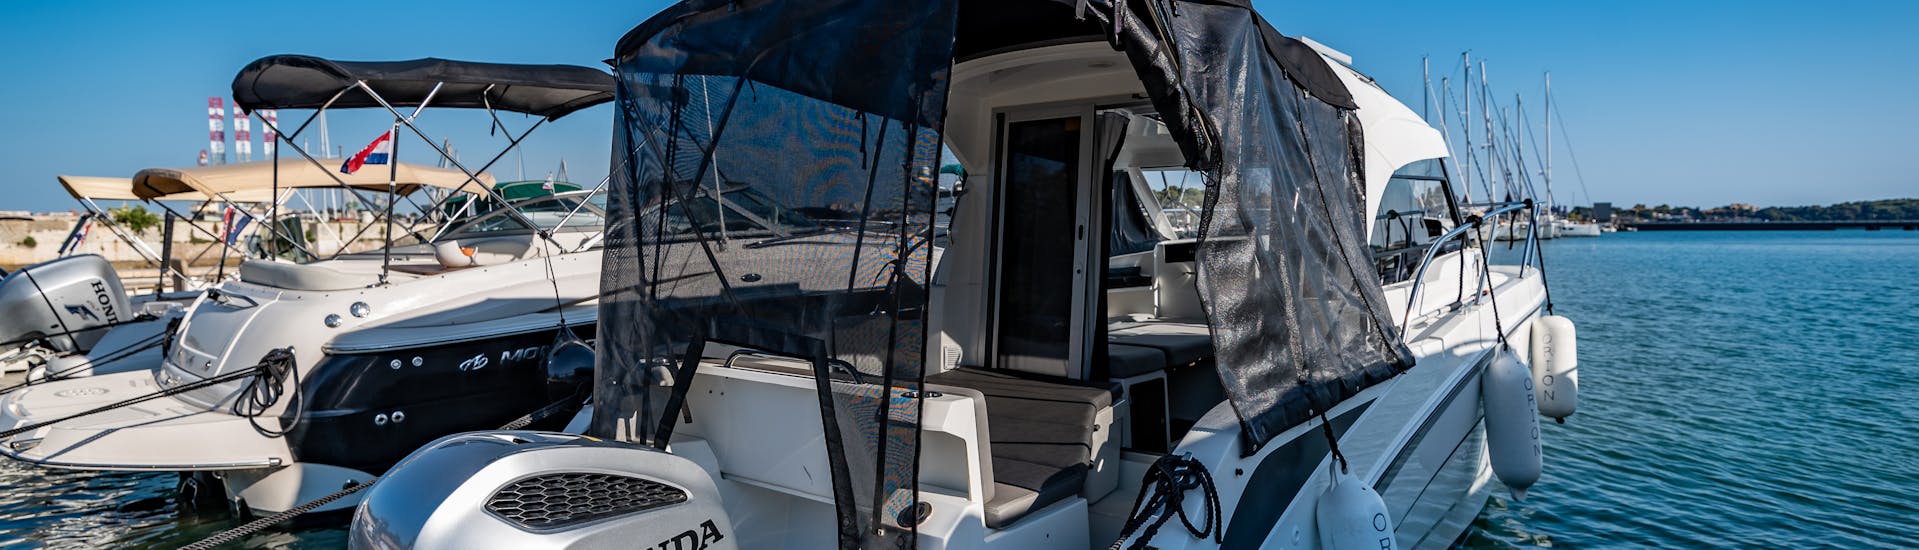 Le Beneteau Antares 8 est prêt à naviguer pendant la location de bateaux à Pula (jusqu'à 9 personnes) avec BELLEN Boat Rental.